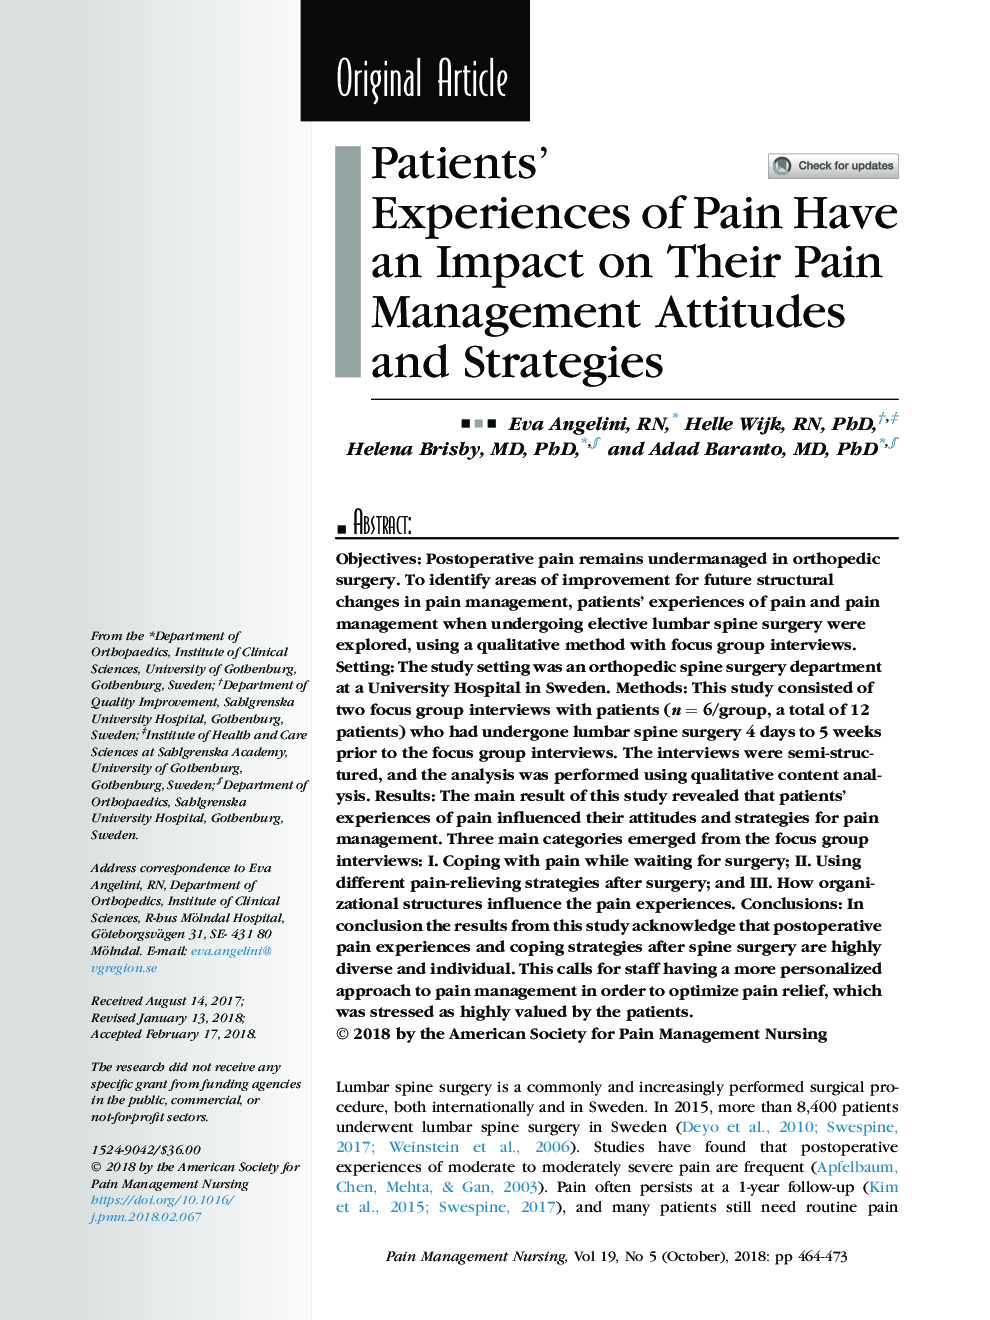 تجربه های بیمار از یک درد یک تاثیر در نگرش ها و استراتژی های مدیریت درد خود دارند